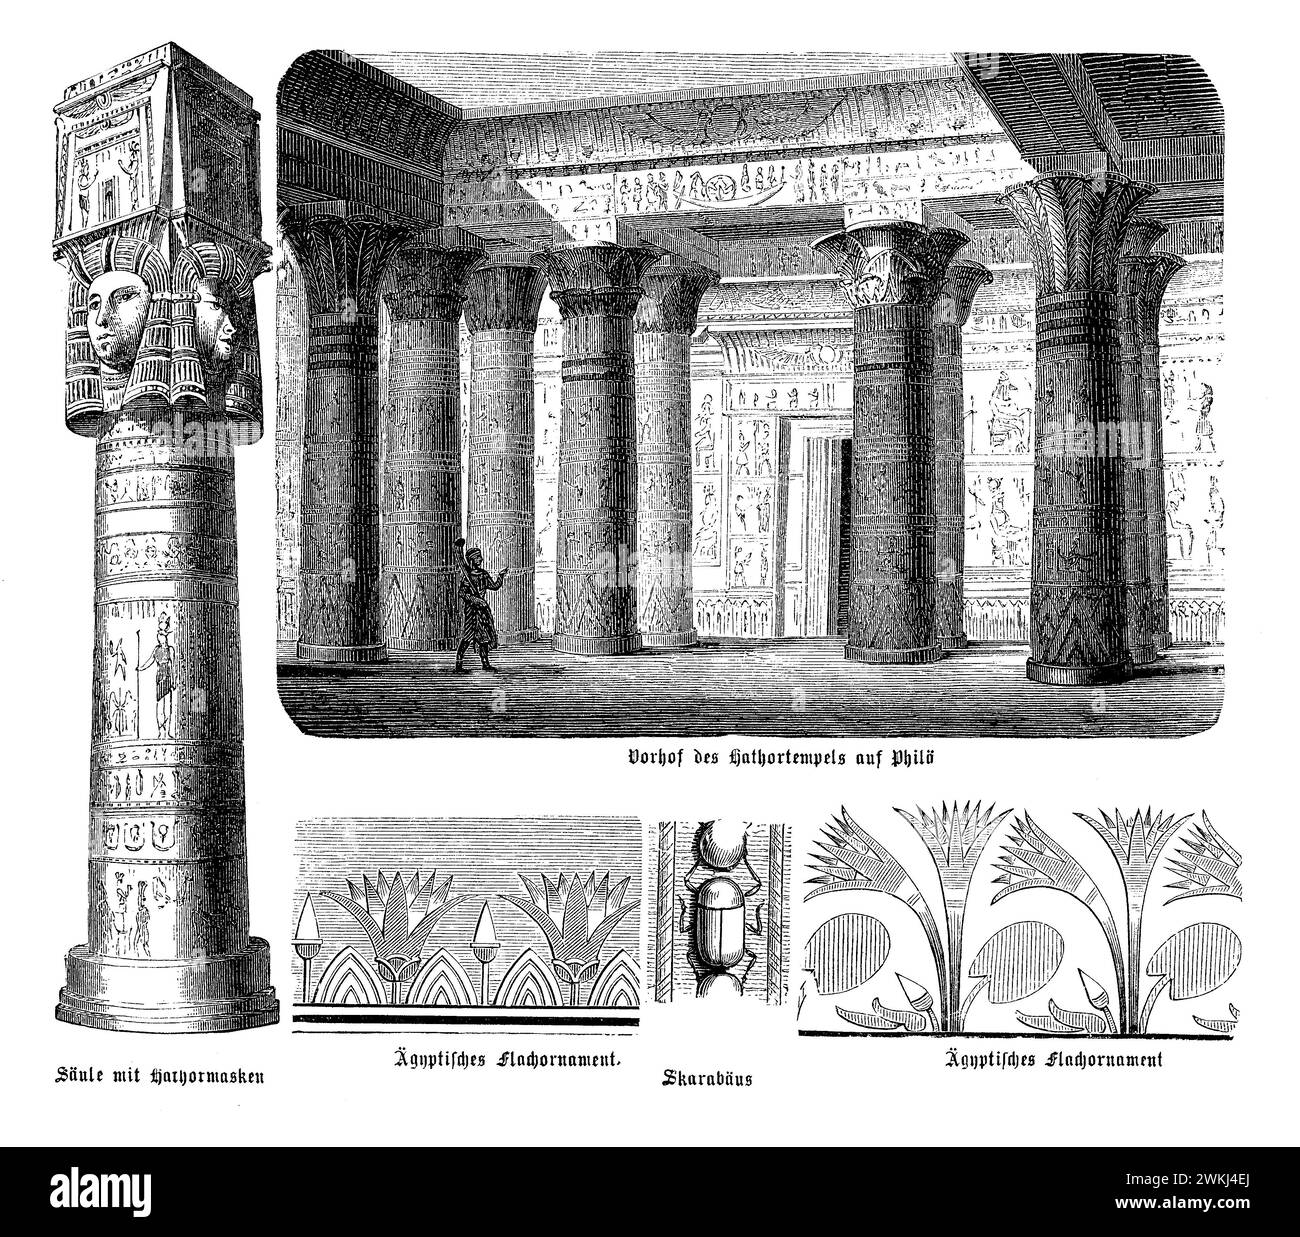 Der Tempel des Hathor in Dendera, ein atemberaubendes Beispiel späägyptischer Architektur, zeigt eine reich verzierte Struktur mit einem Schwerpunkt auf Hathors Anbetung. Der Tempel verfügt über einen weitläufigen Innenhof, der von Säulen umgeben ist, die mit den komplexen Bildern von Hathor und anderen Gottheiten verziert sind. Komplizierte flache Ornamente bedecken die Tempelwände und zeigen religiöse Rituale, mythologische Szenen und symbolische Elemente wie den Scarab, ein Symbol der Wiedergeburt und die Sonne. Dieser Tempel mit seinen detaillierten Schnitzereien und seiner historischen Bedeutung ist ein Zeugnis der religiösen und künstlerischen Errungenschaften von A Stockfoto